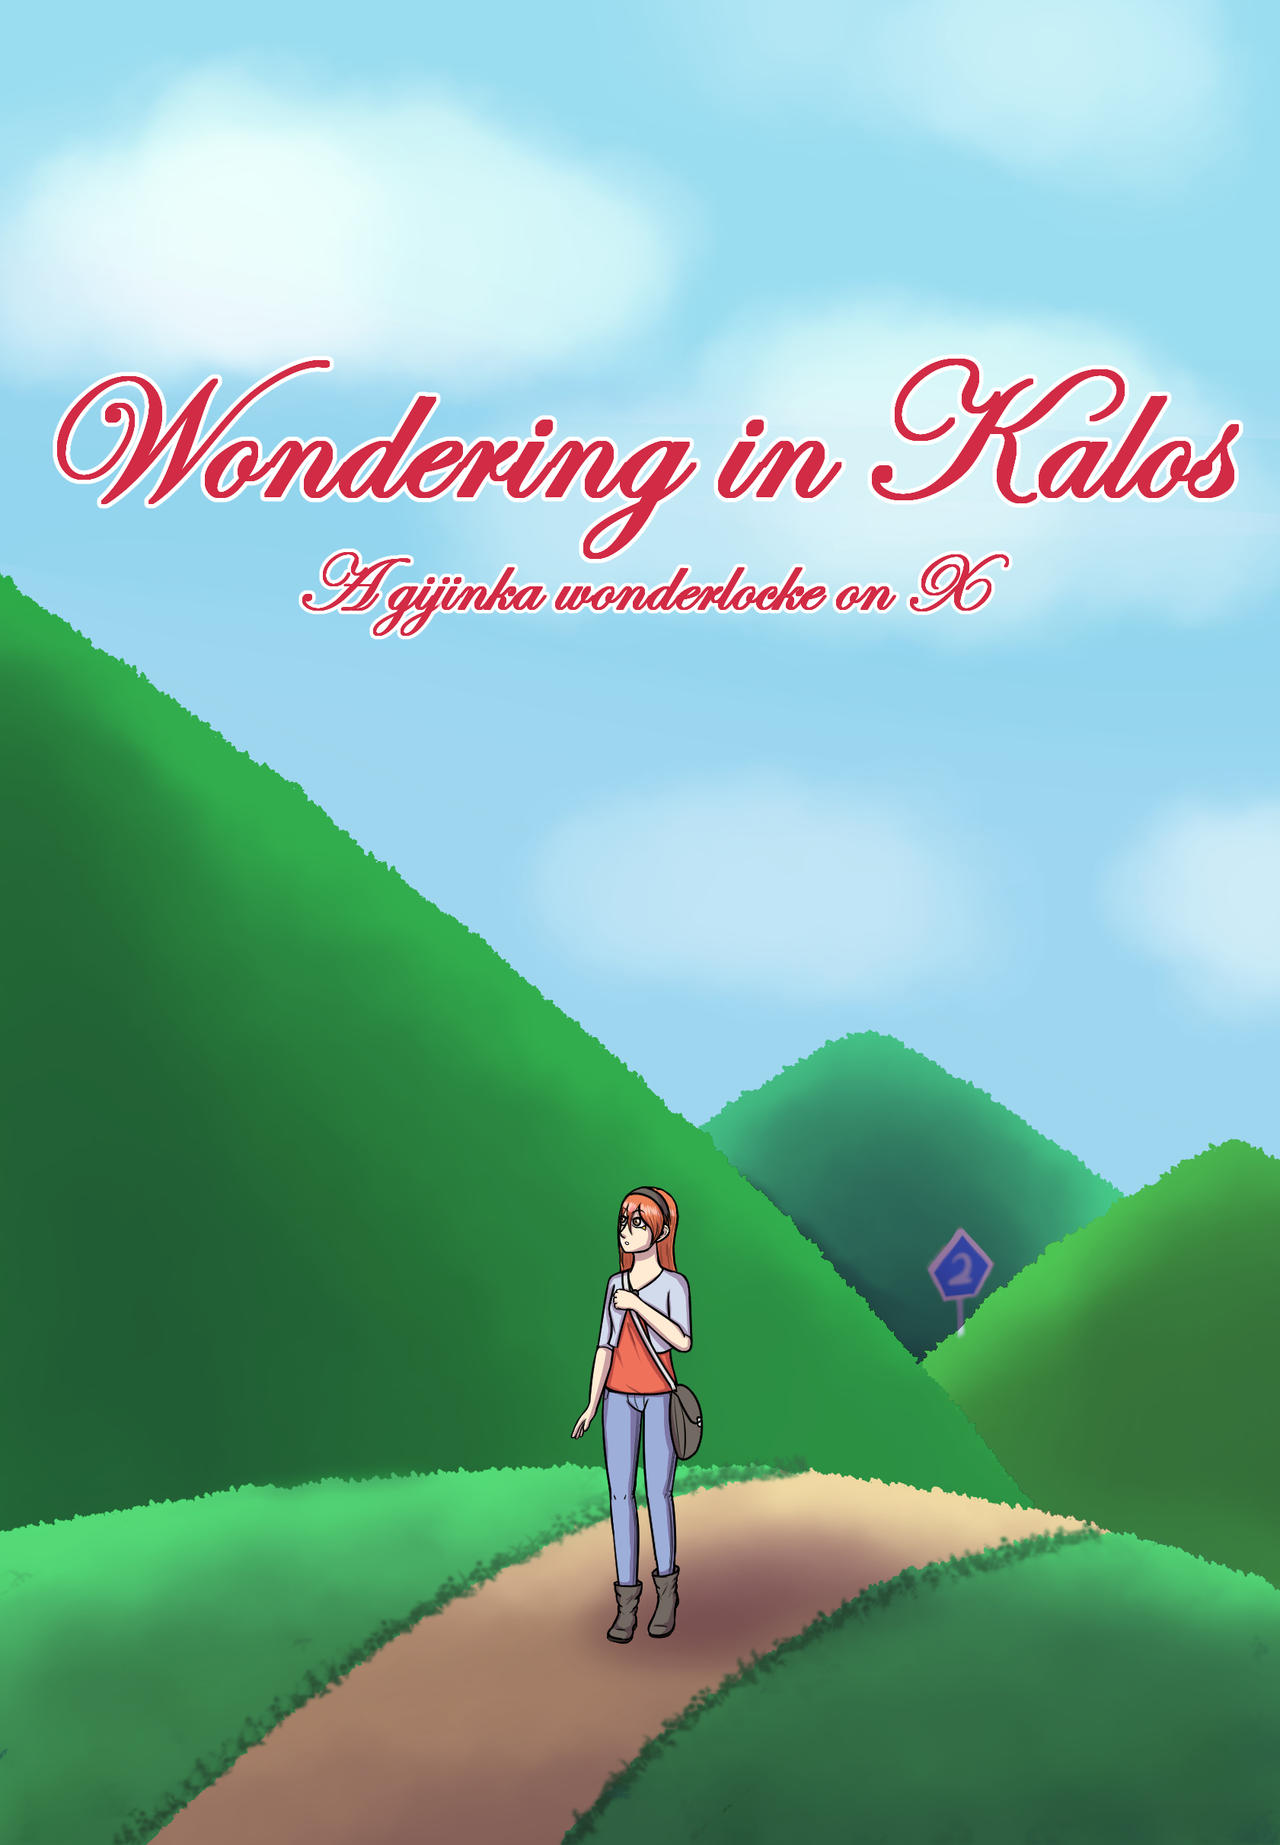 [X] Wondering in Kalos - Page 2 Wondering_in_kalos___a_gijinka_wonderlocke_x_by_ryikochan_ddwn2az-fullview.jpg?token=eyJ0eXAiOiJKV1QiLCJhbGciOiJIUzI1NiJ9.eyJzdWIiOiJ1cm46YXBwOjdlMGQxODg5ODIyNjQzNzNhNWYwZDQxNWVhMGQyNmUwIiwiaXNzIjoidXJuOmFwcDo3ZTBkMTg4OTgyMjY0MzczYTVmMGQ0MTVlYTBkMjZlMCIsIm9iaiI6W1t7ImhlaWdodCI6Ijw9MTg0NSIsInBhdGgiOiJcL2ZcL2IzMDFkYjA1LWI3ZjItNDBkZC1hOGM0LWIwN2Q1YTVjMWJjNFwvZGR3bjJhei1hNjJkMDZhZi04MzI1LTQxNmMtYTNlMS0wMmE5YjU5OWU0NTMuanBnIiwid2lkdGgiOiI8PTEyODAifV1dLCJhdWQiOlsidXJuOnNlcnZpY2U6aW1hZ2Uub3BlcmF0aW9ucyJdfQ